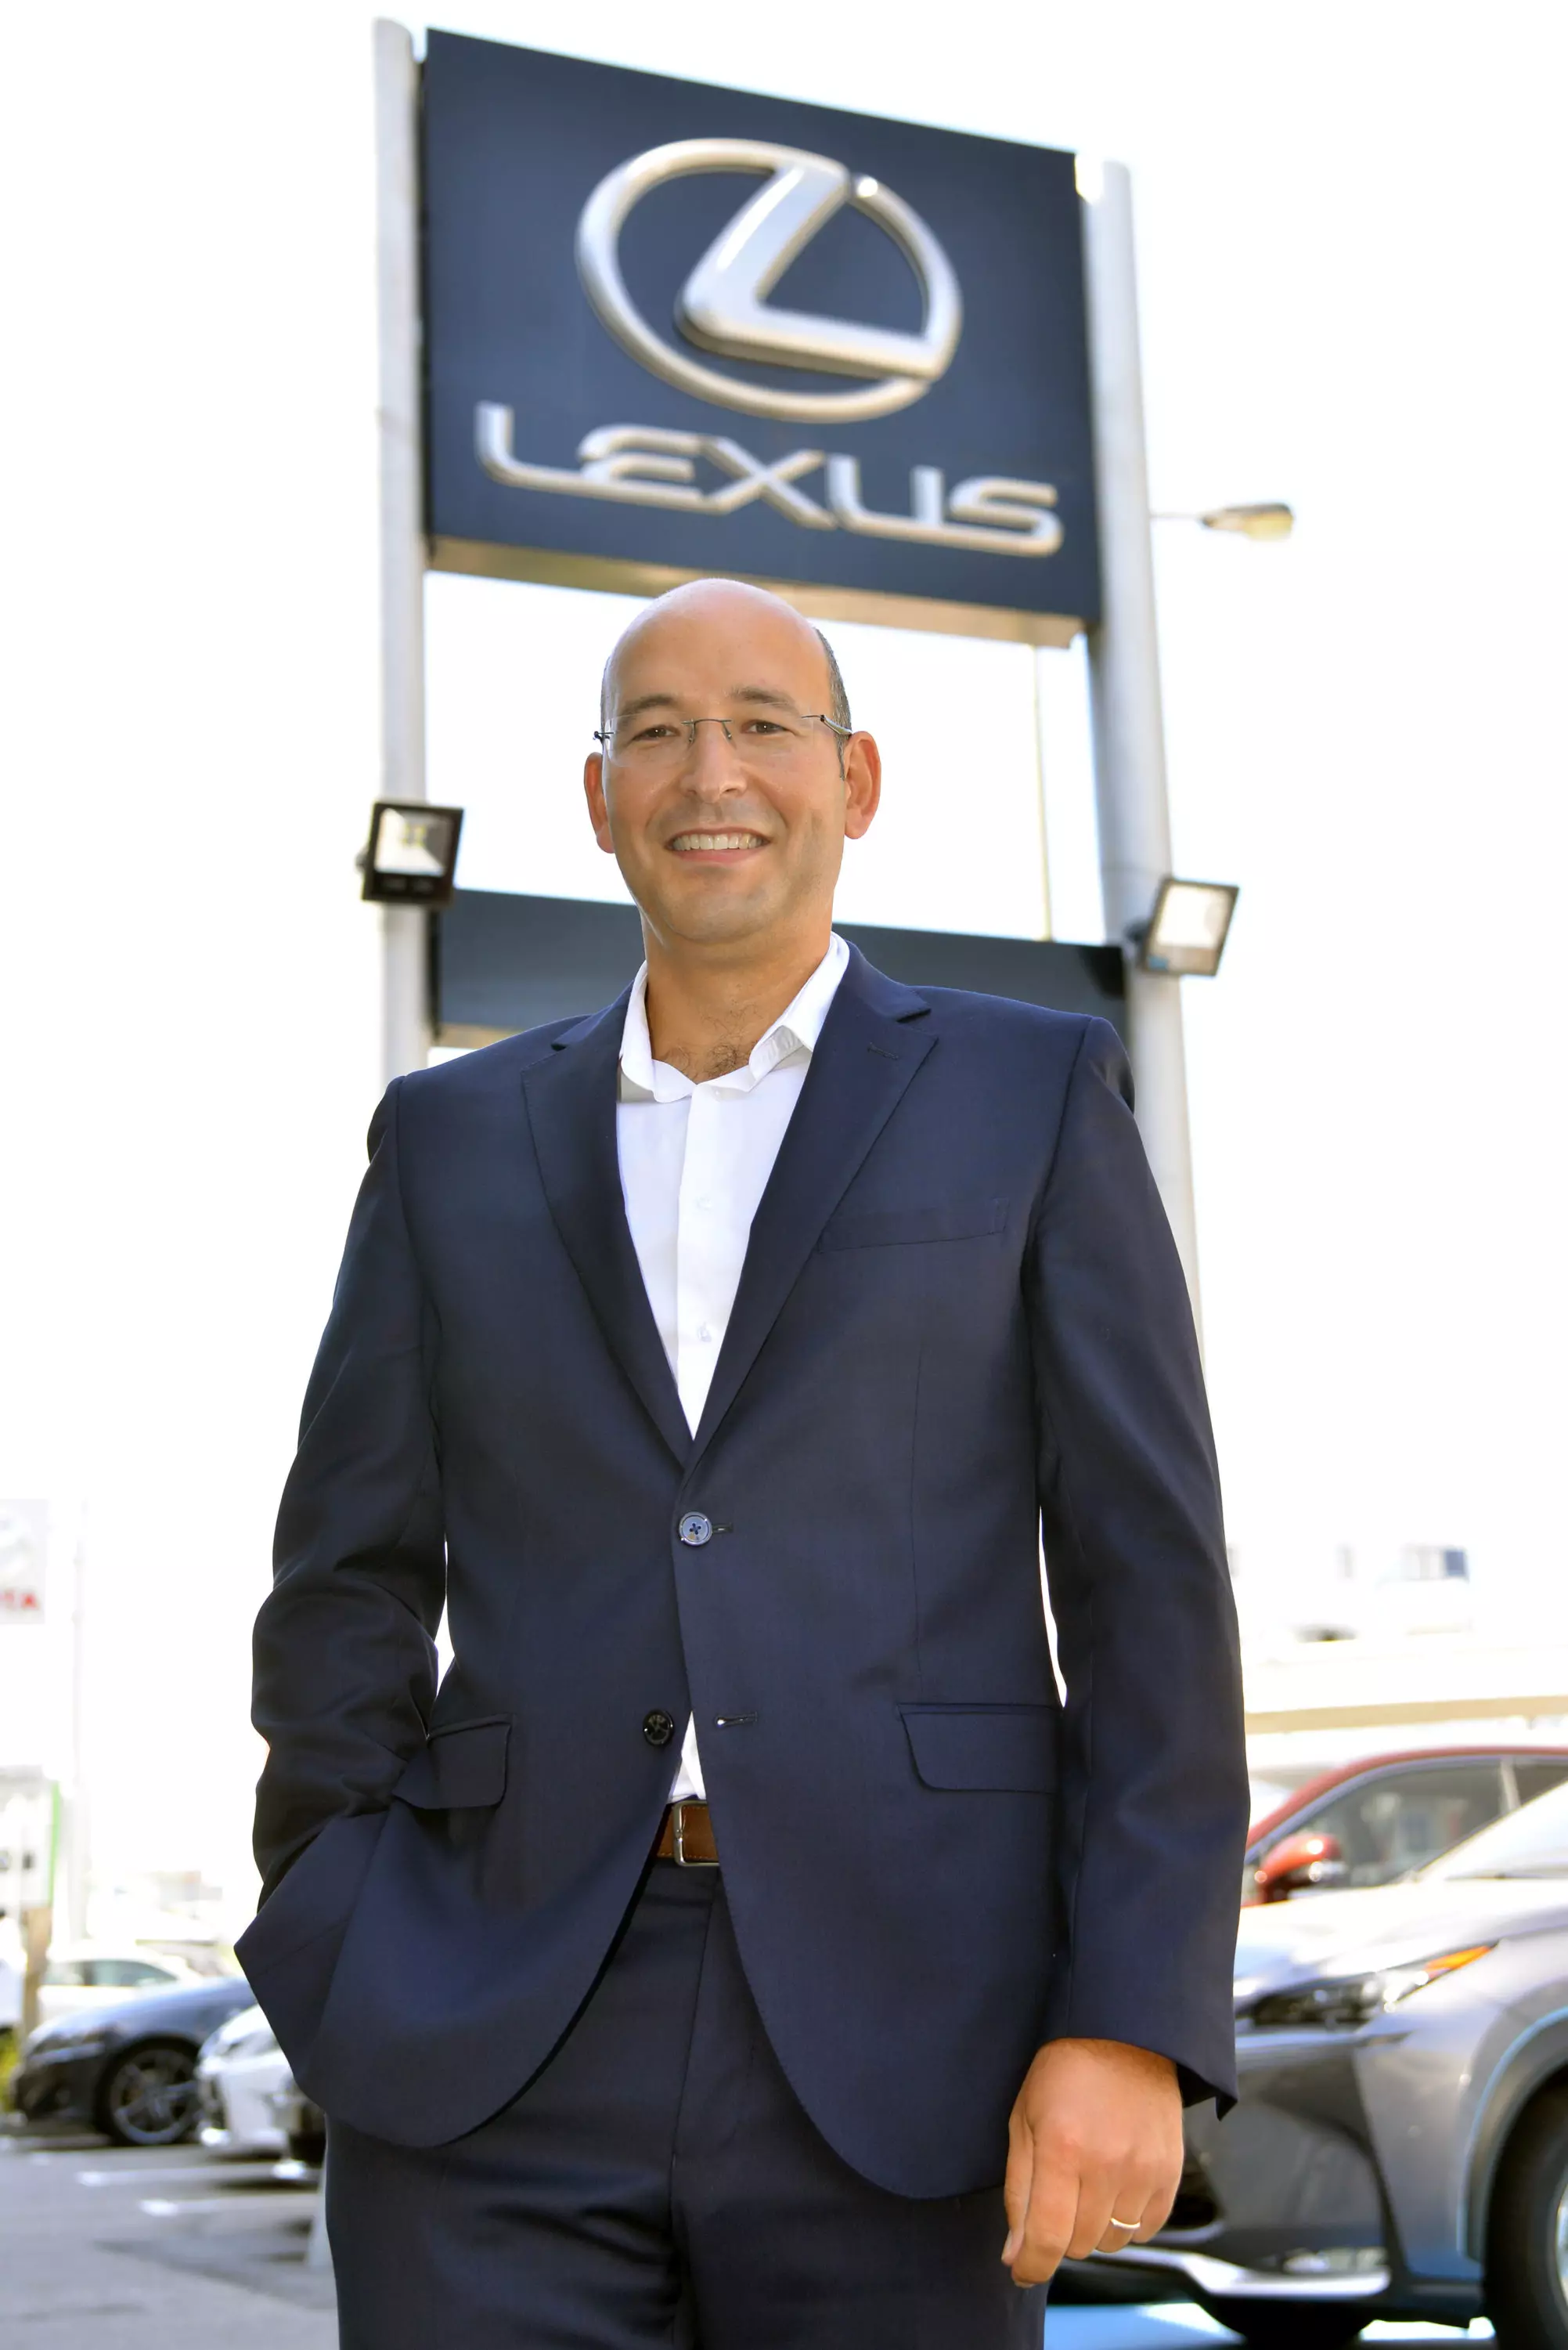 Victor Marques, kommunikationsdirektör på Lexus Portugal